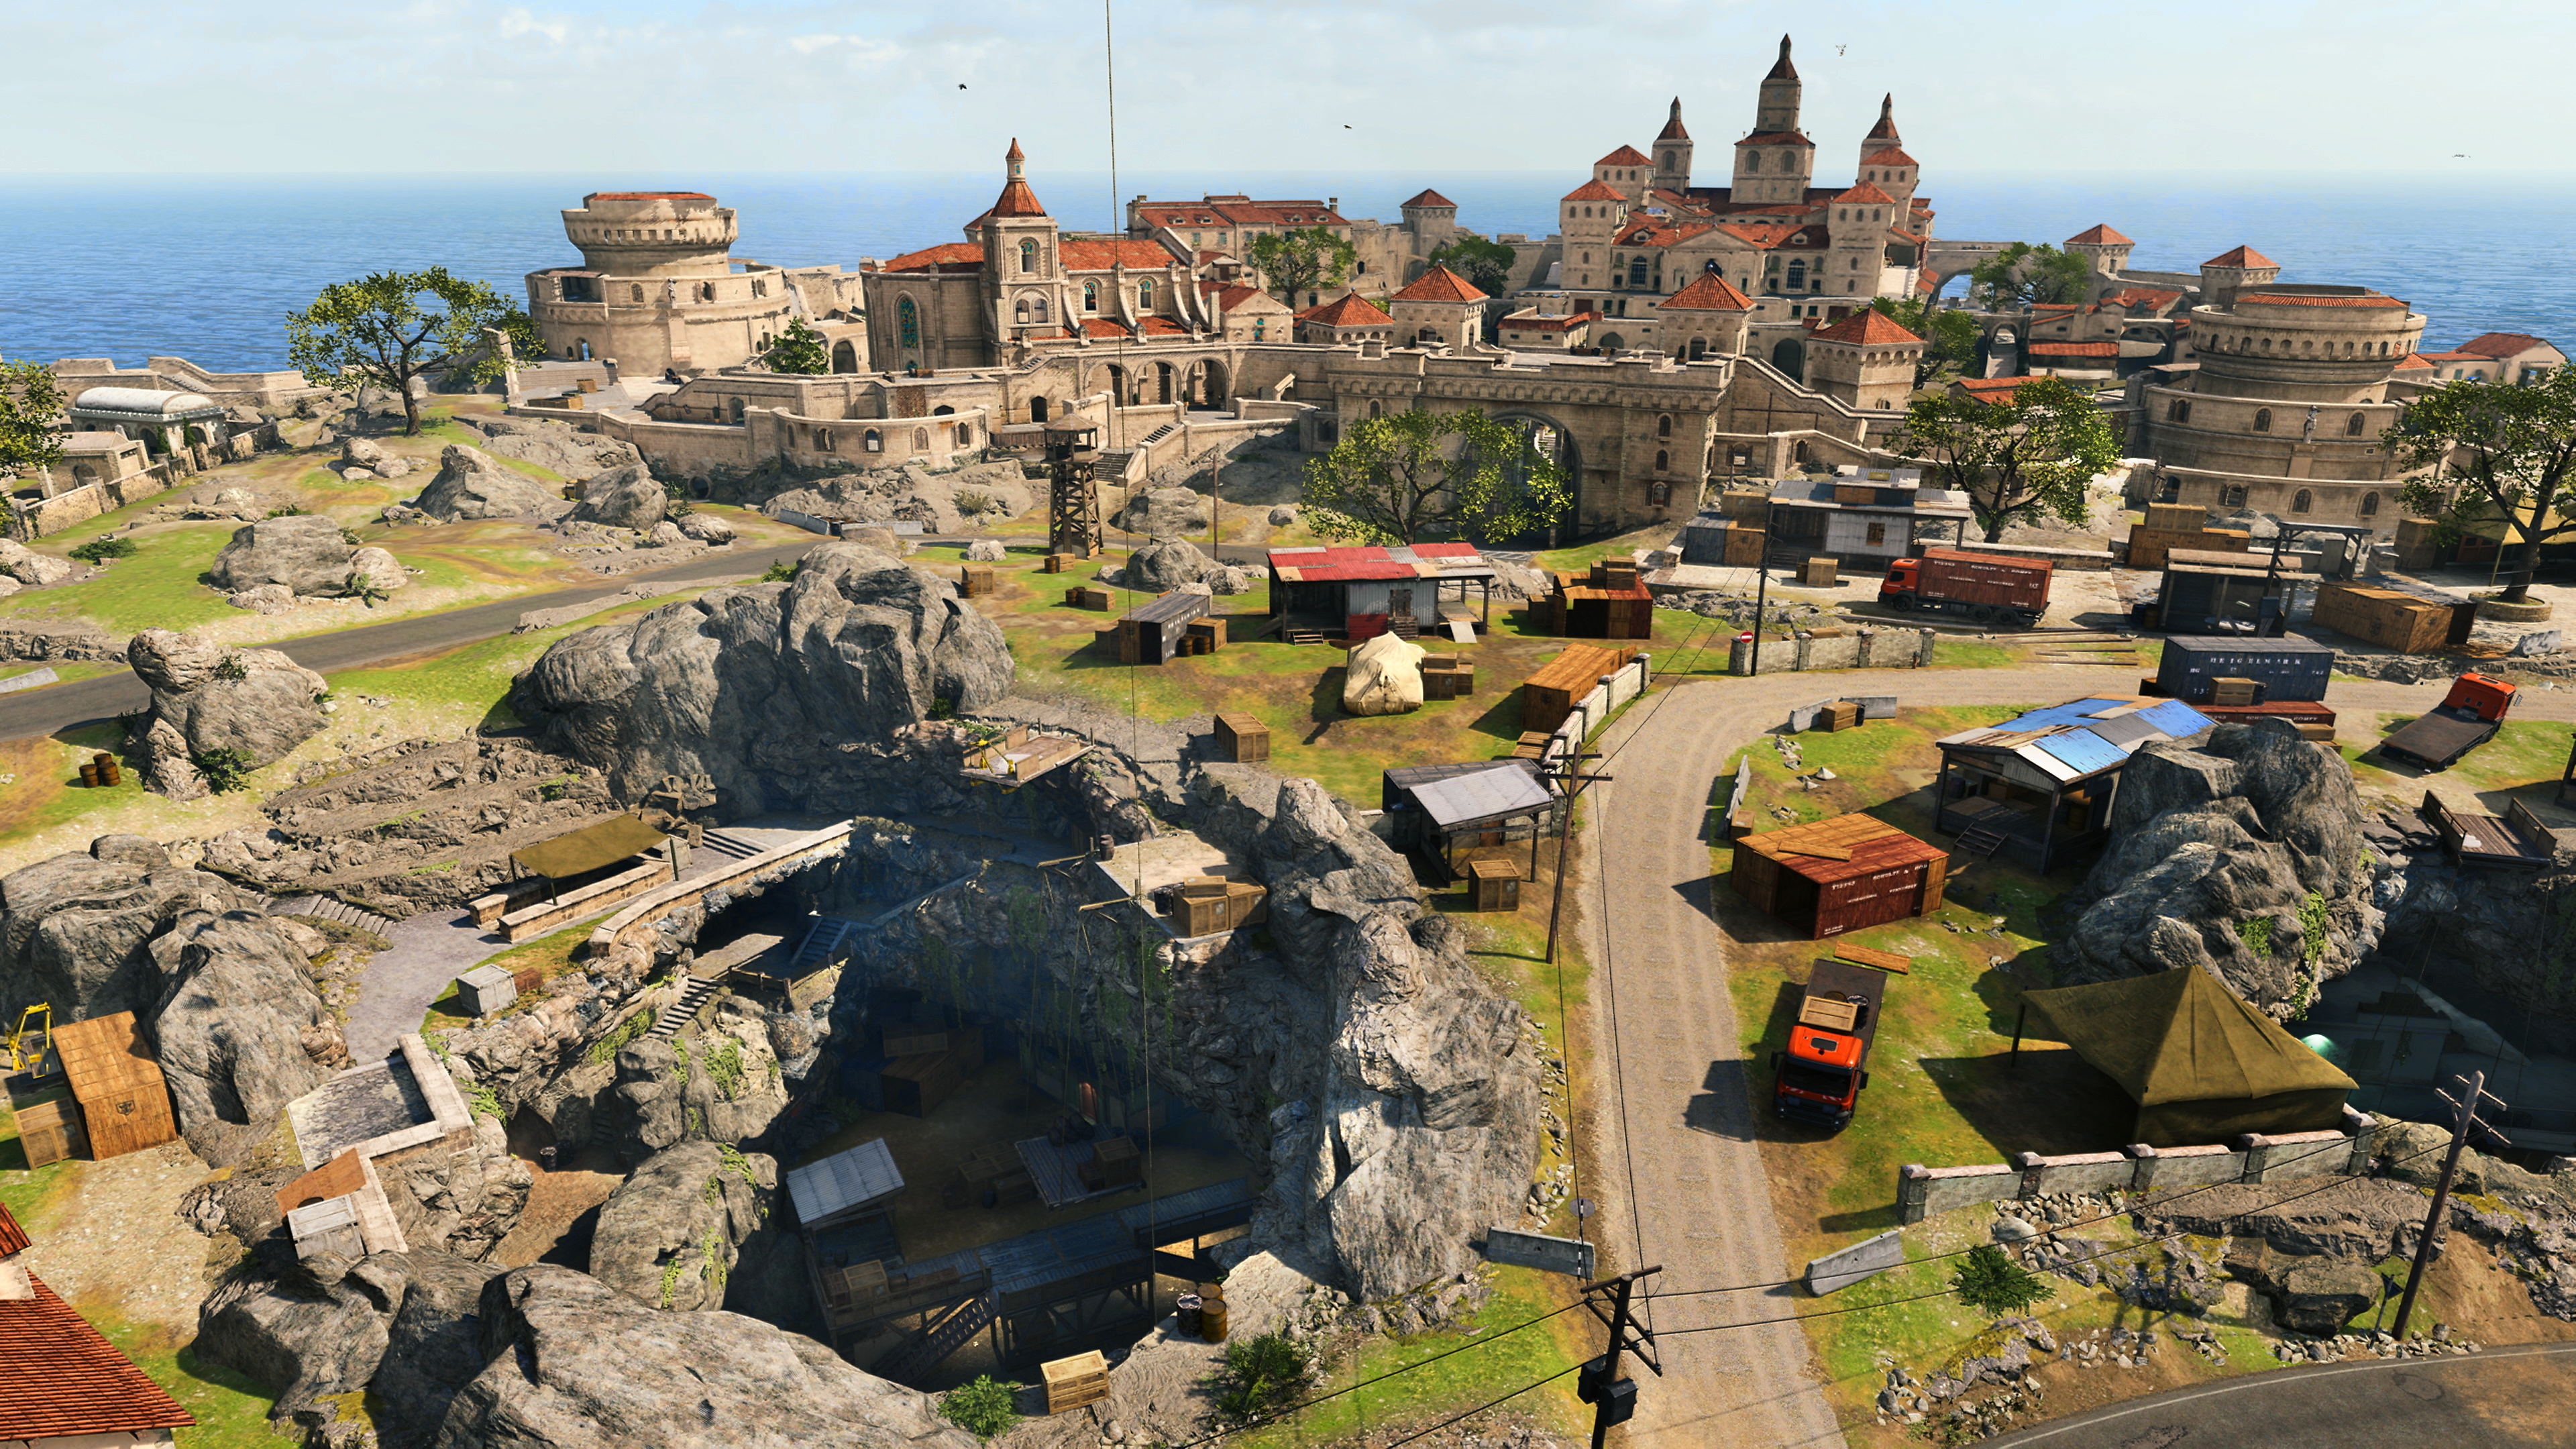 Call of Duty Warzone – снимок экрана с изображением новой карты Fortune's Keep с видом на город